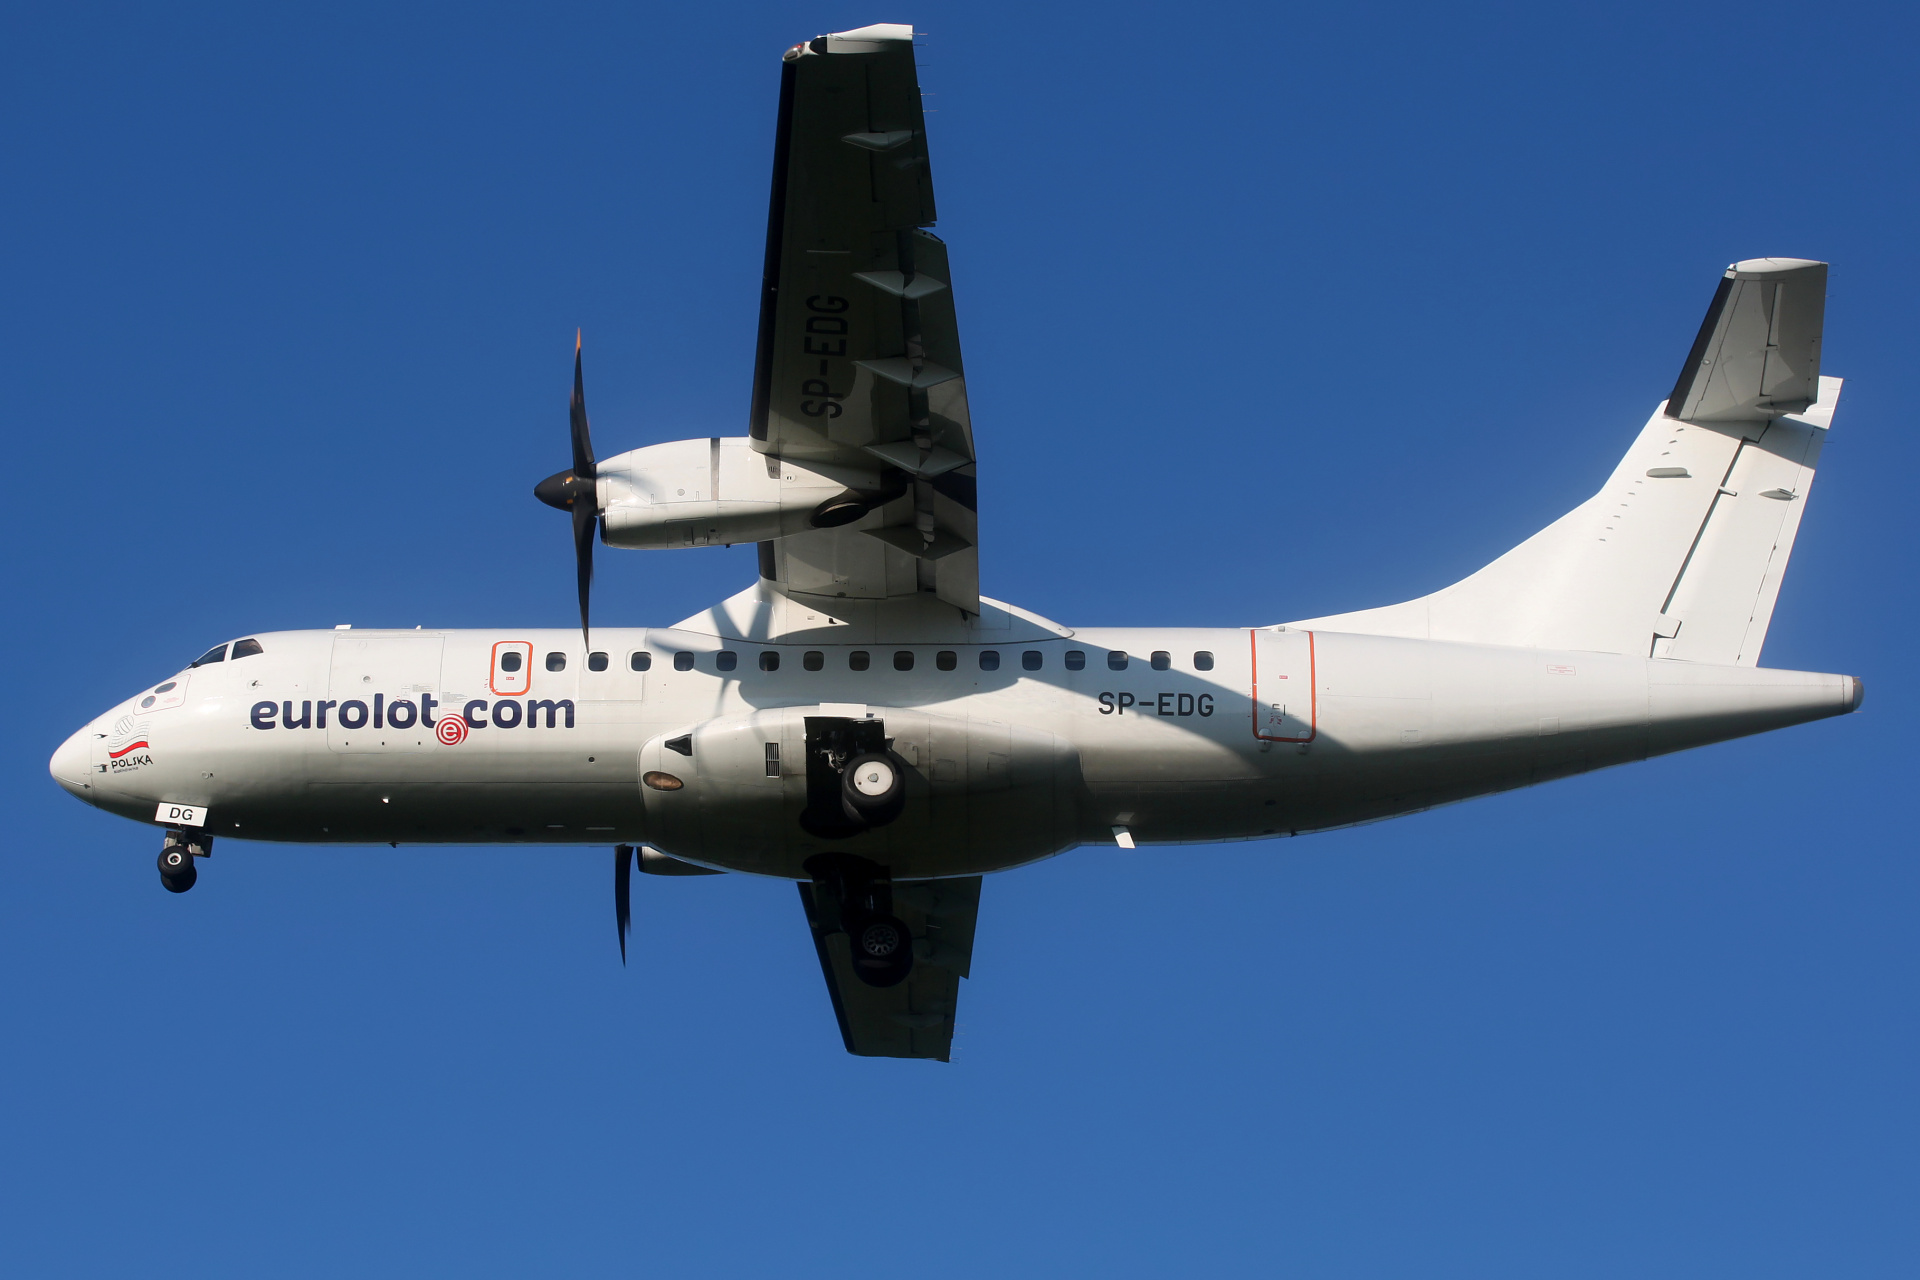 SP-EDG (Aircraft » EPWA Spotting » ATR 42 » EuroLOT)